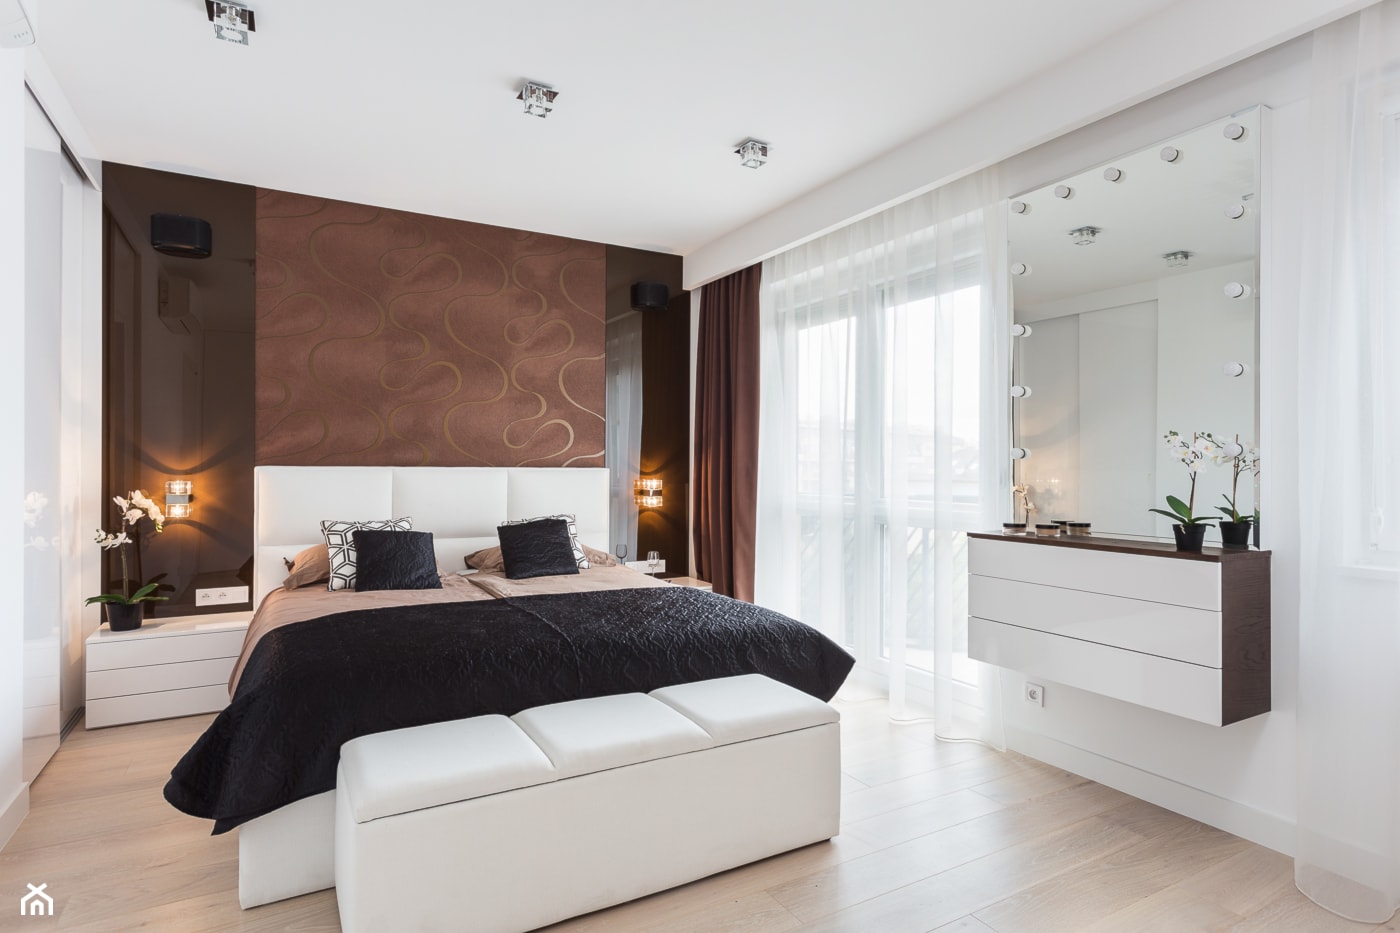 W sypialnia w brązie - Średnia biała brązowa sypialnia, styl nowoczesny - zdjęcie od ARCHITETTO - Homebook